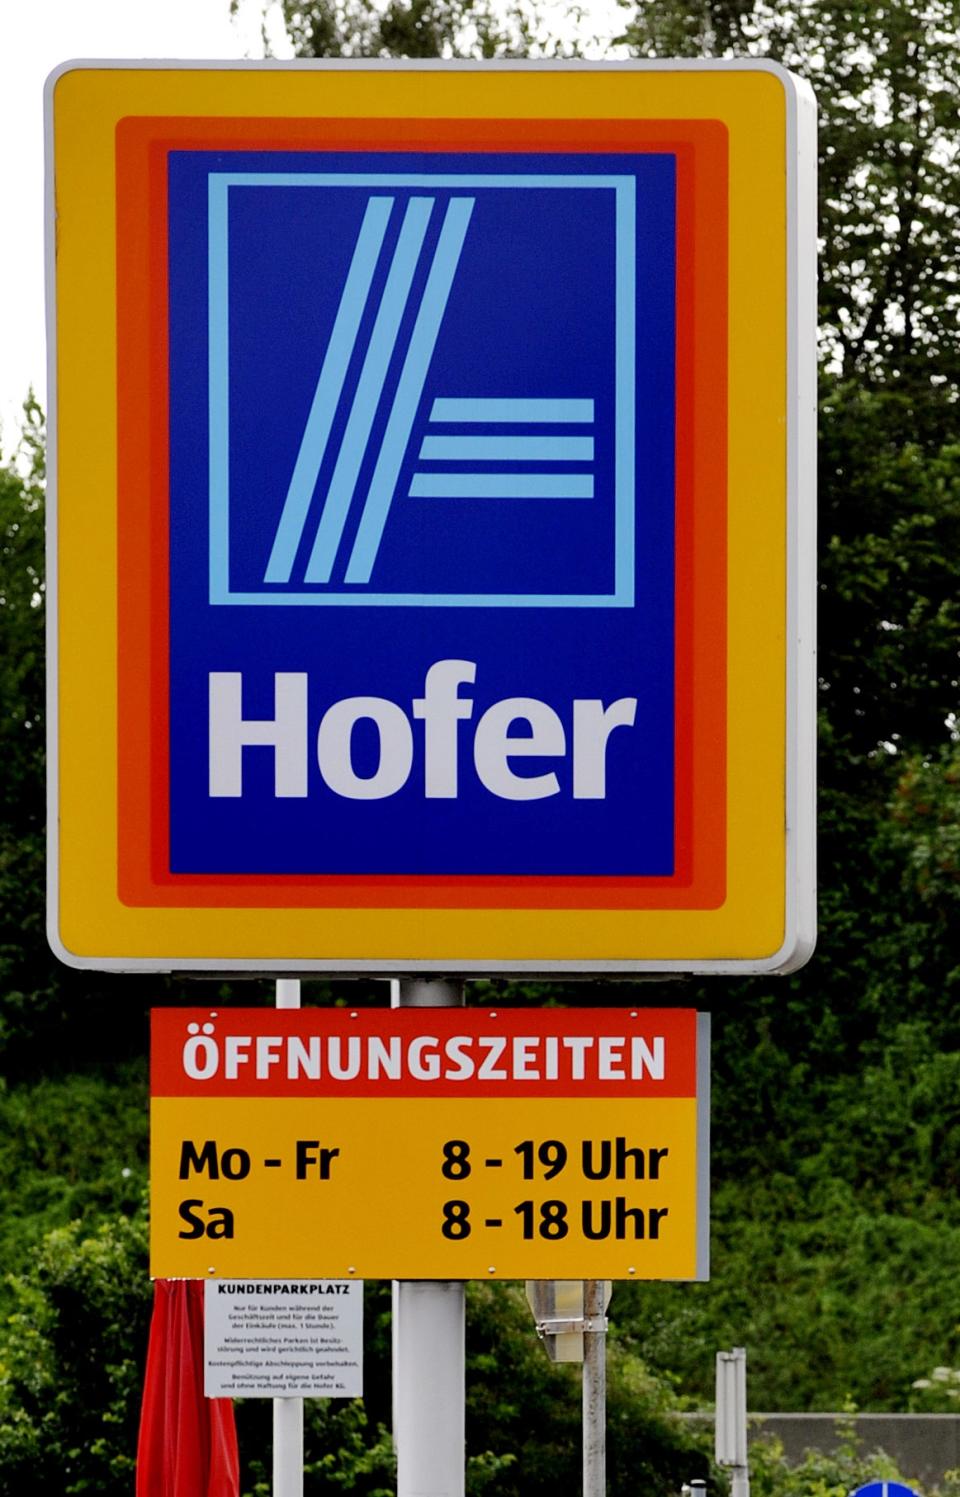 In Österreich gibt es Hofer statt Aldi – so sieht der Schriftzug aus. (Bild: AP Photo/Kerstin Joensson)